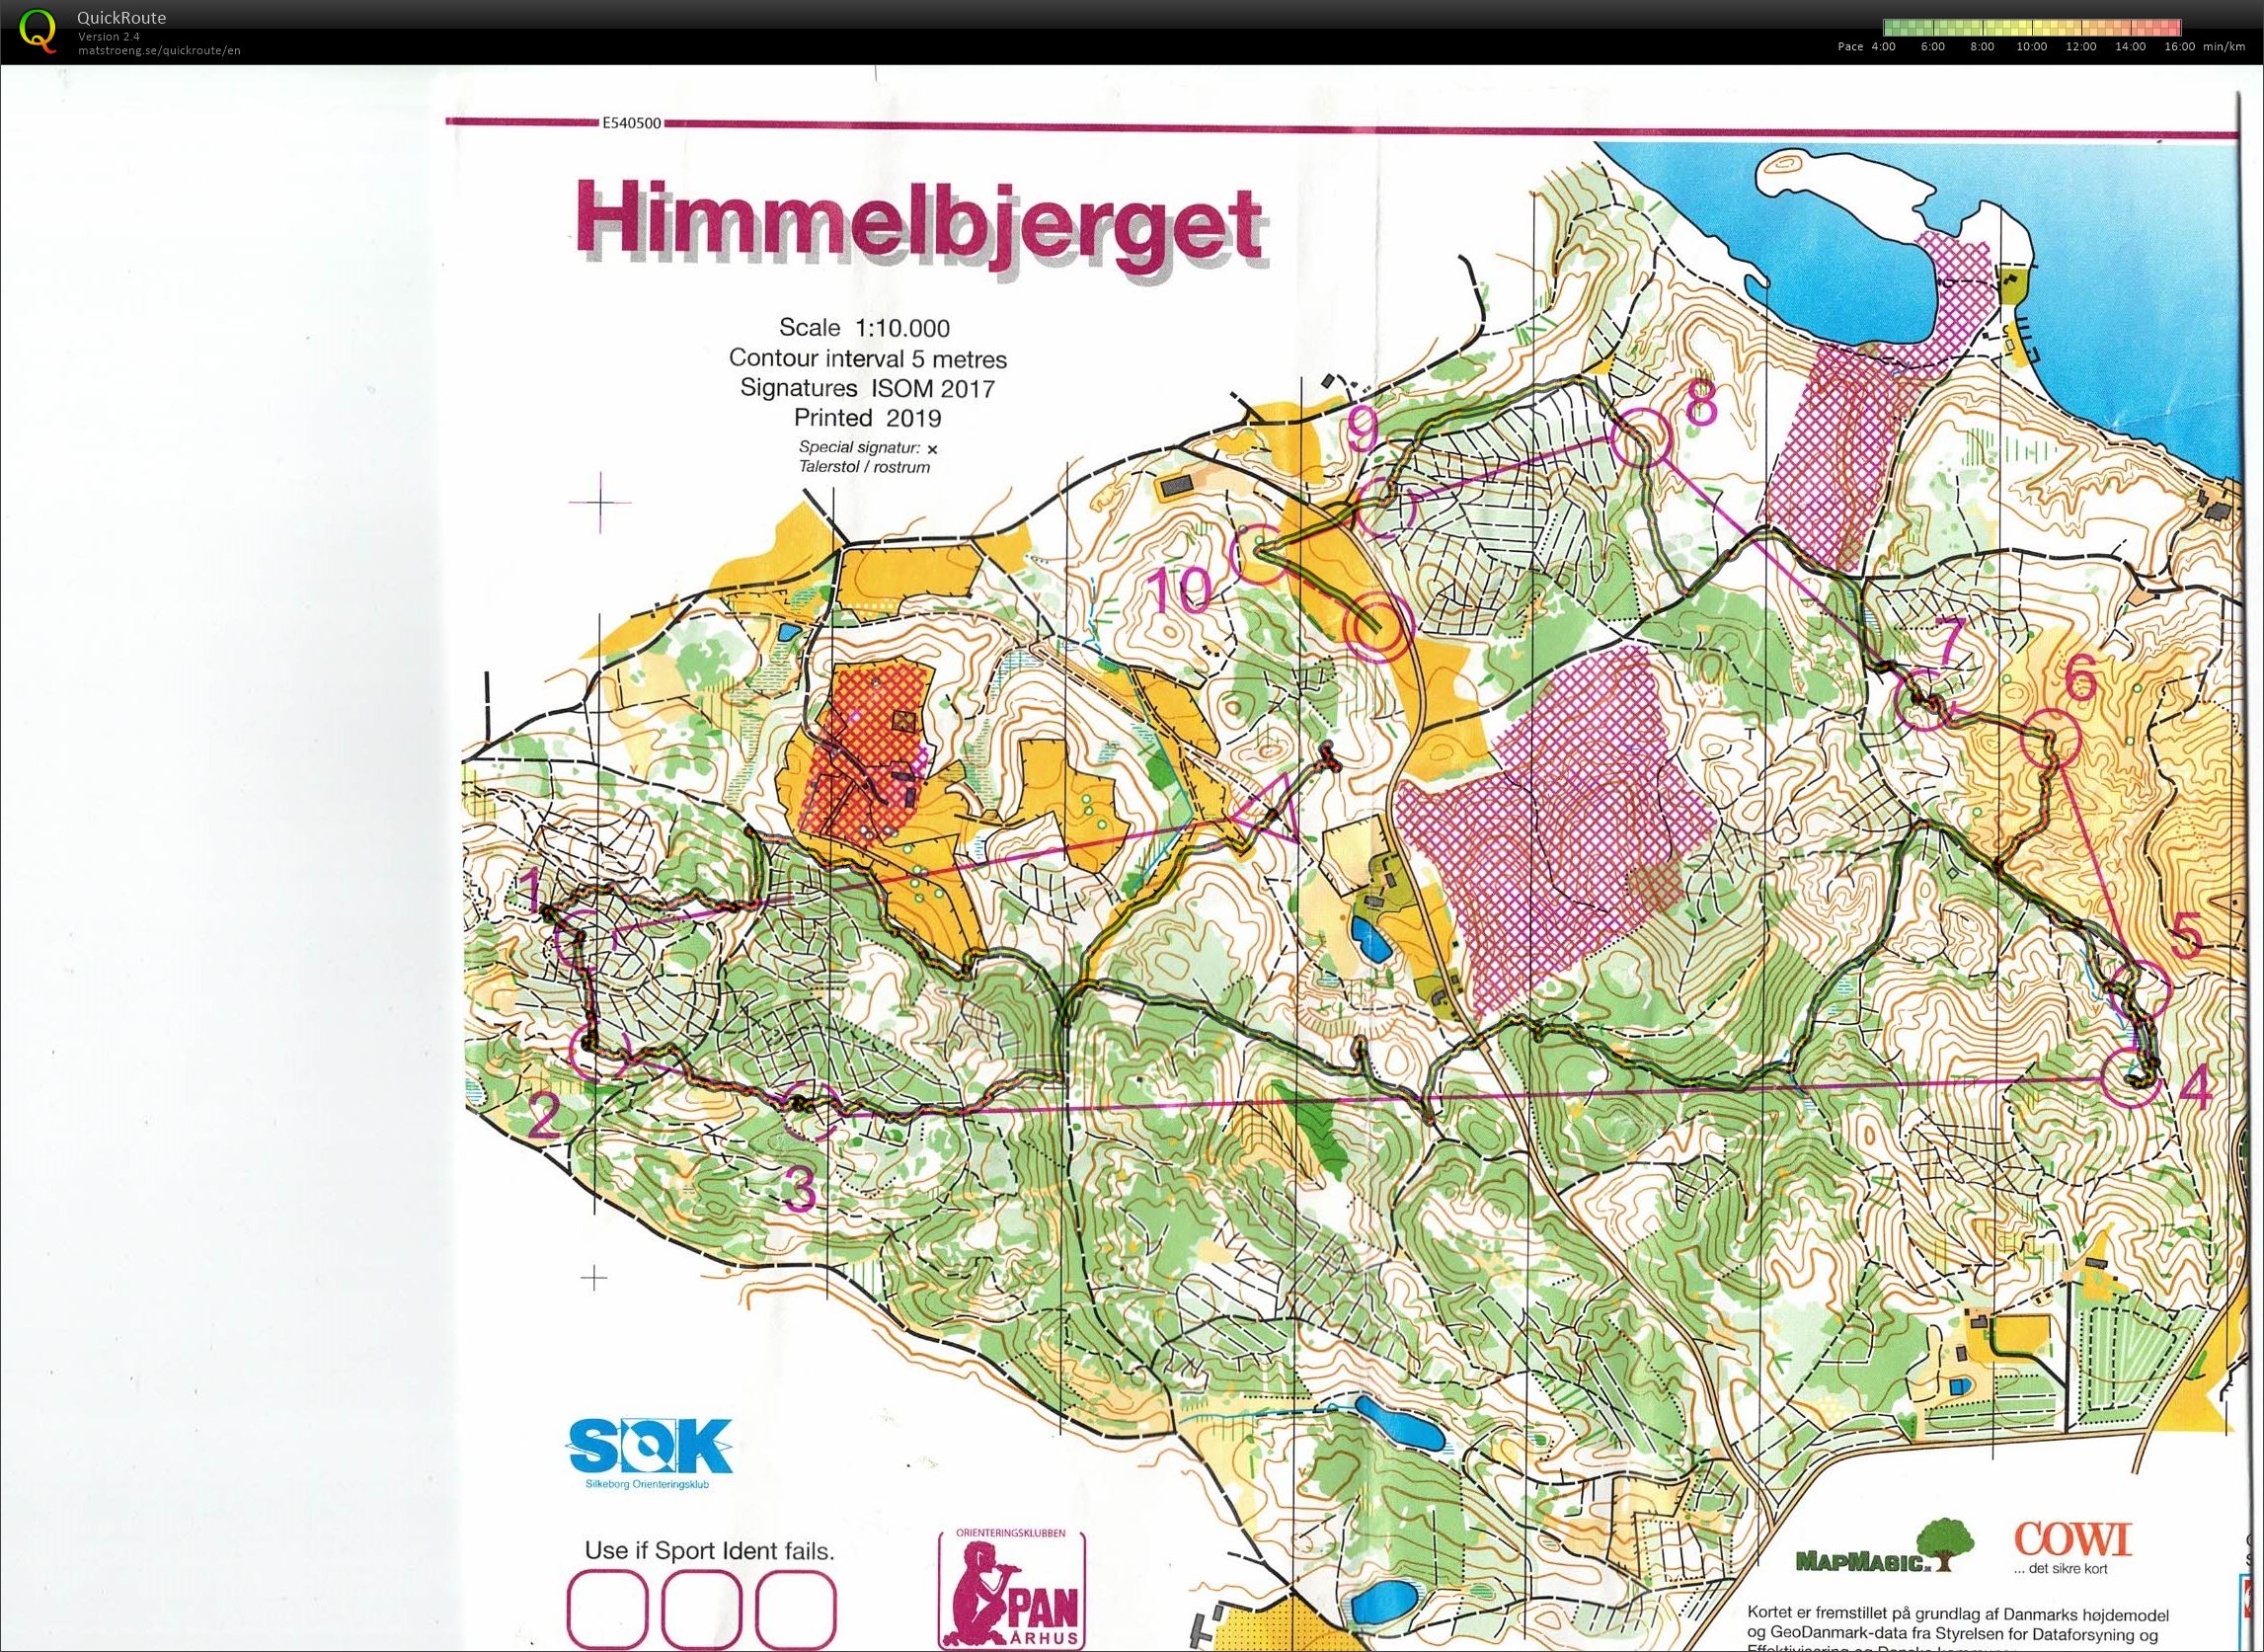 Himmelbjerget, JWOC testløb, Bane Åben 4, Pia Gade, 090619 (2019-06-09)